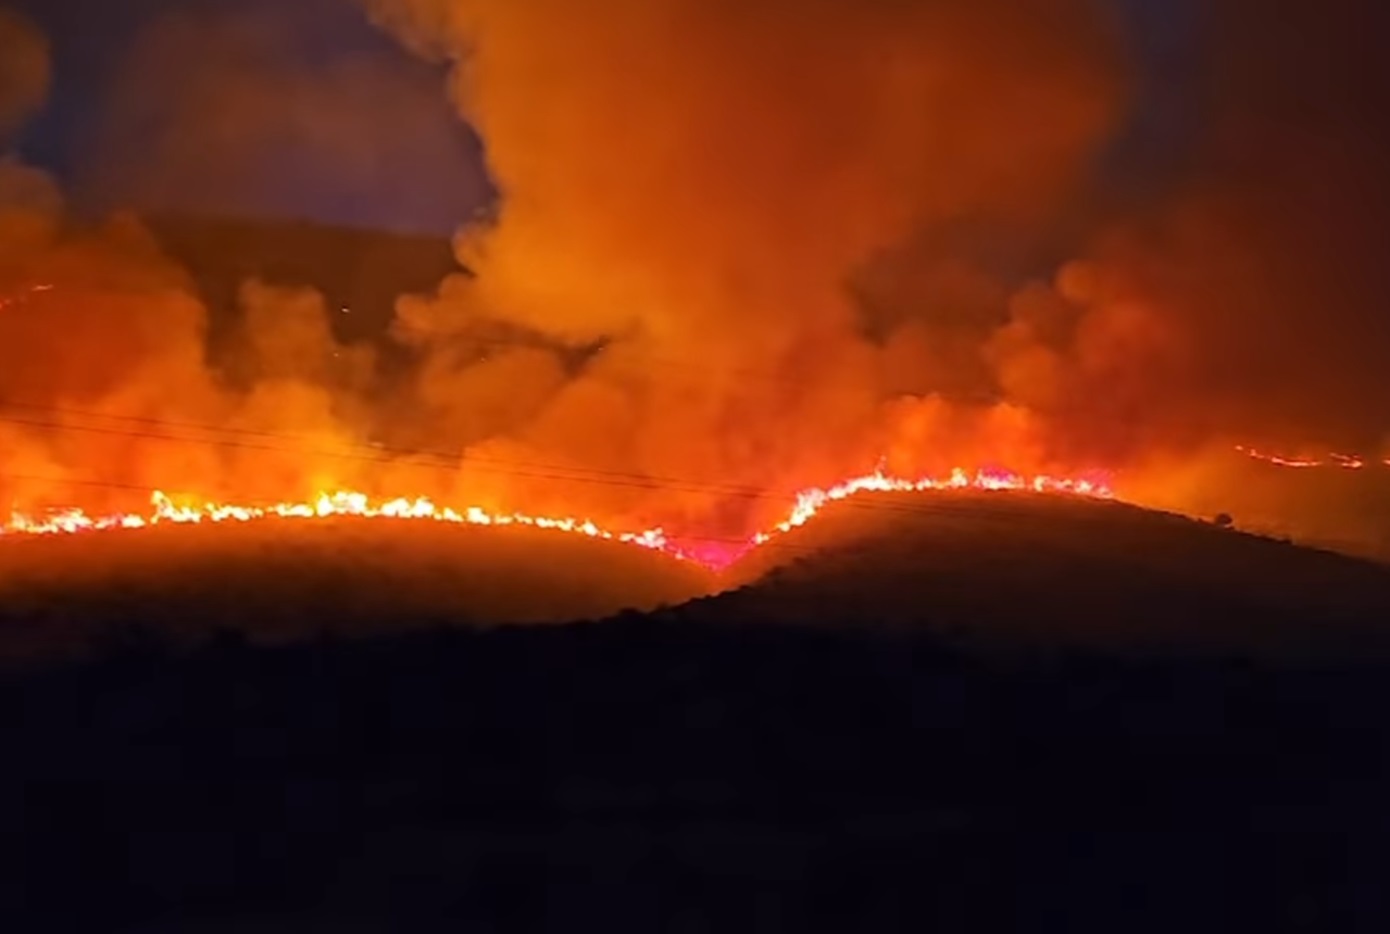 Συνεχίζεται η μάχη με τις φλόγες που καίει περιοχές στη νότια Αλβανία